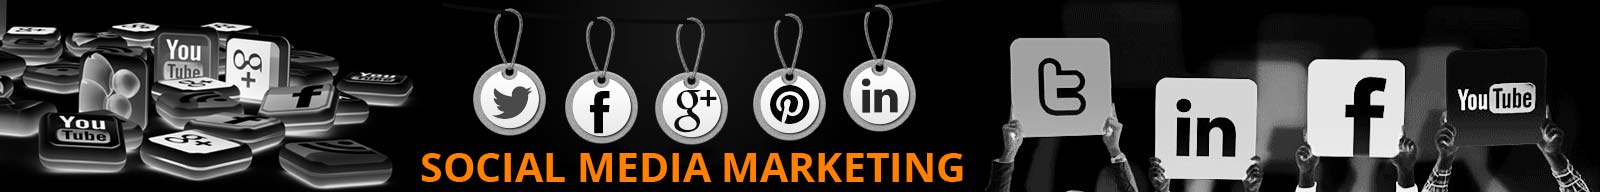 Social Media Marketing (SMM) Services : iMz Media Solutions